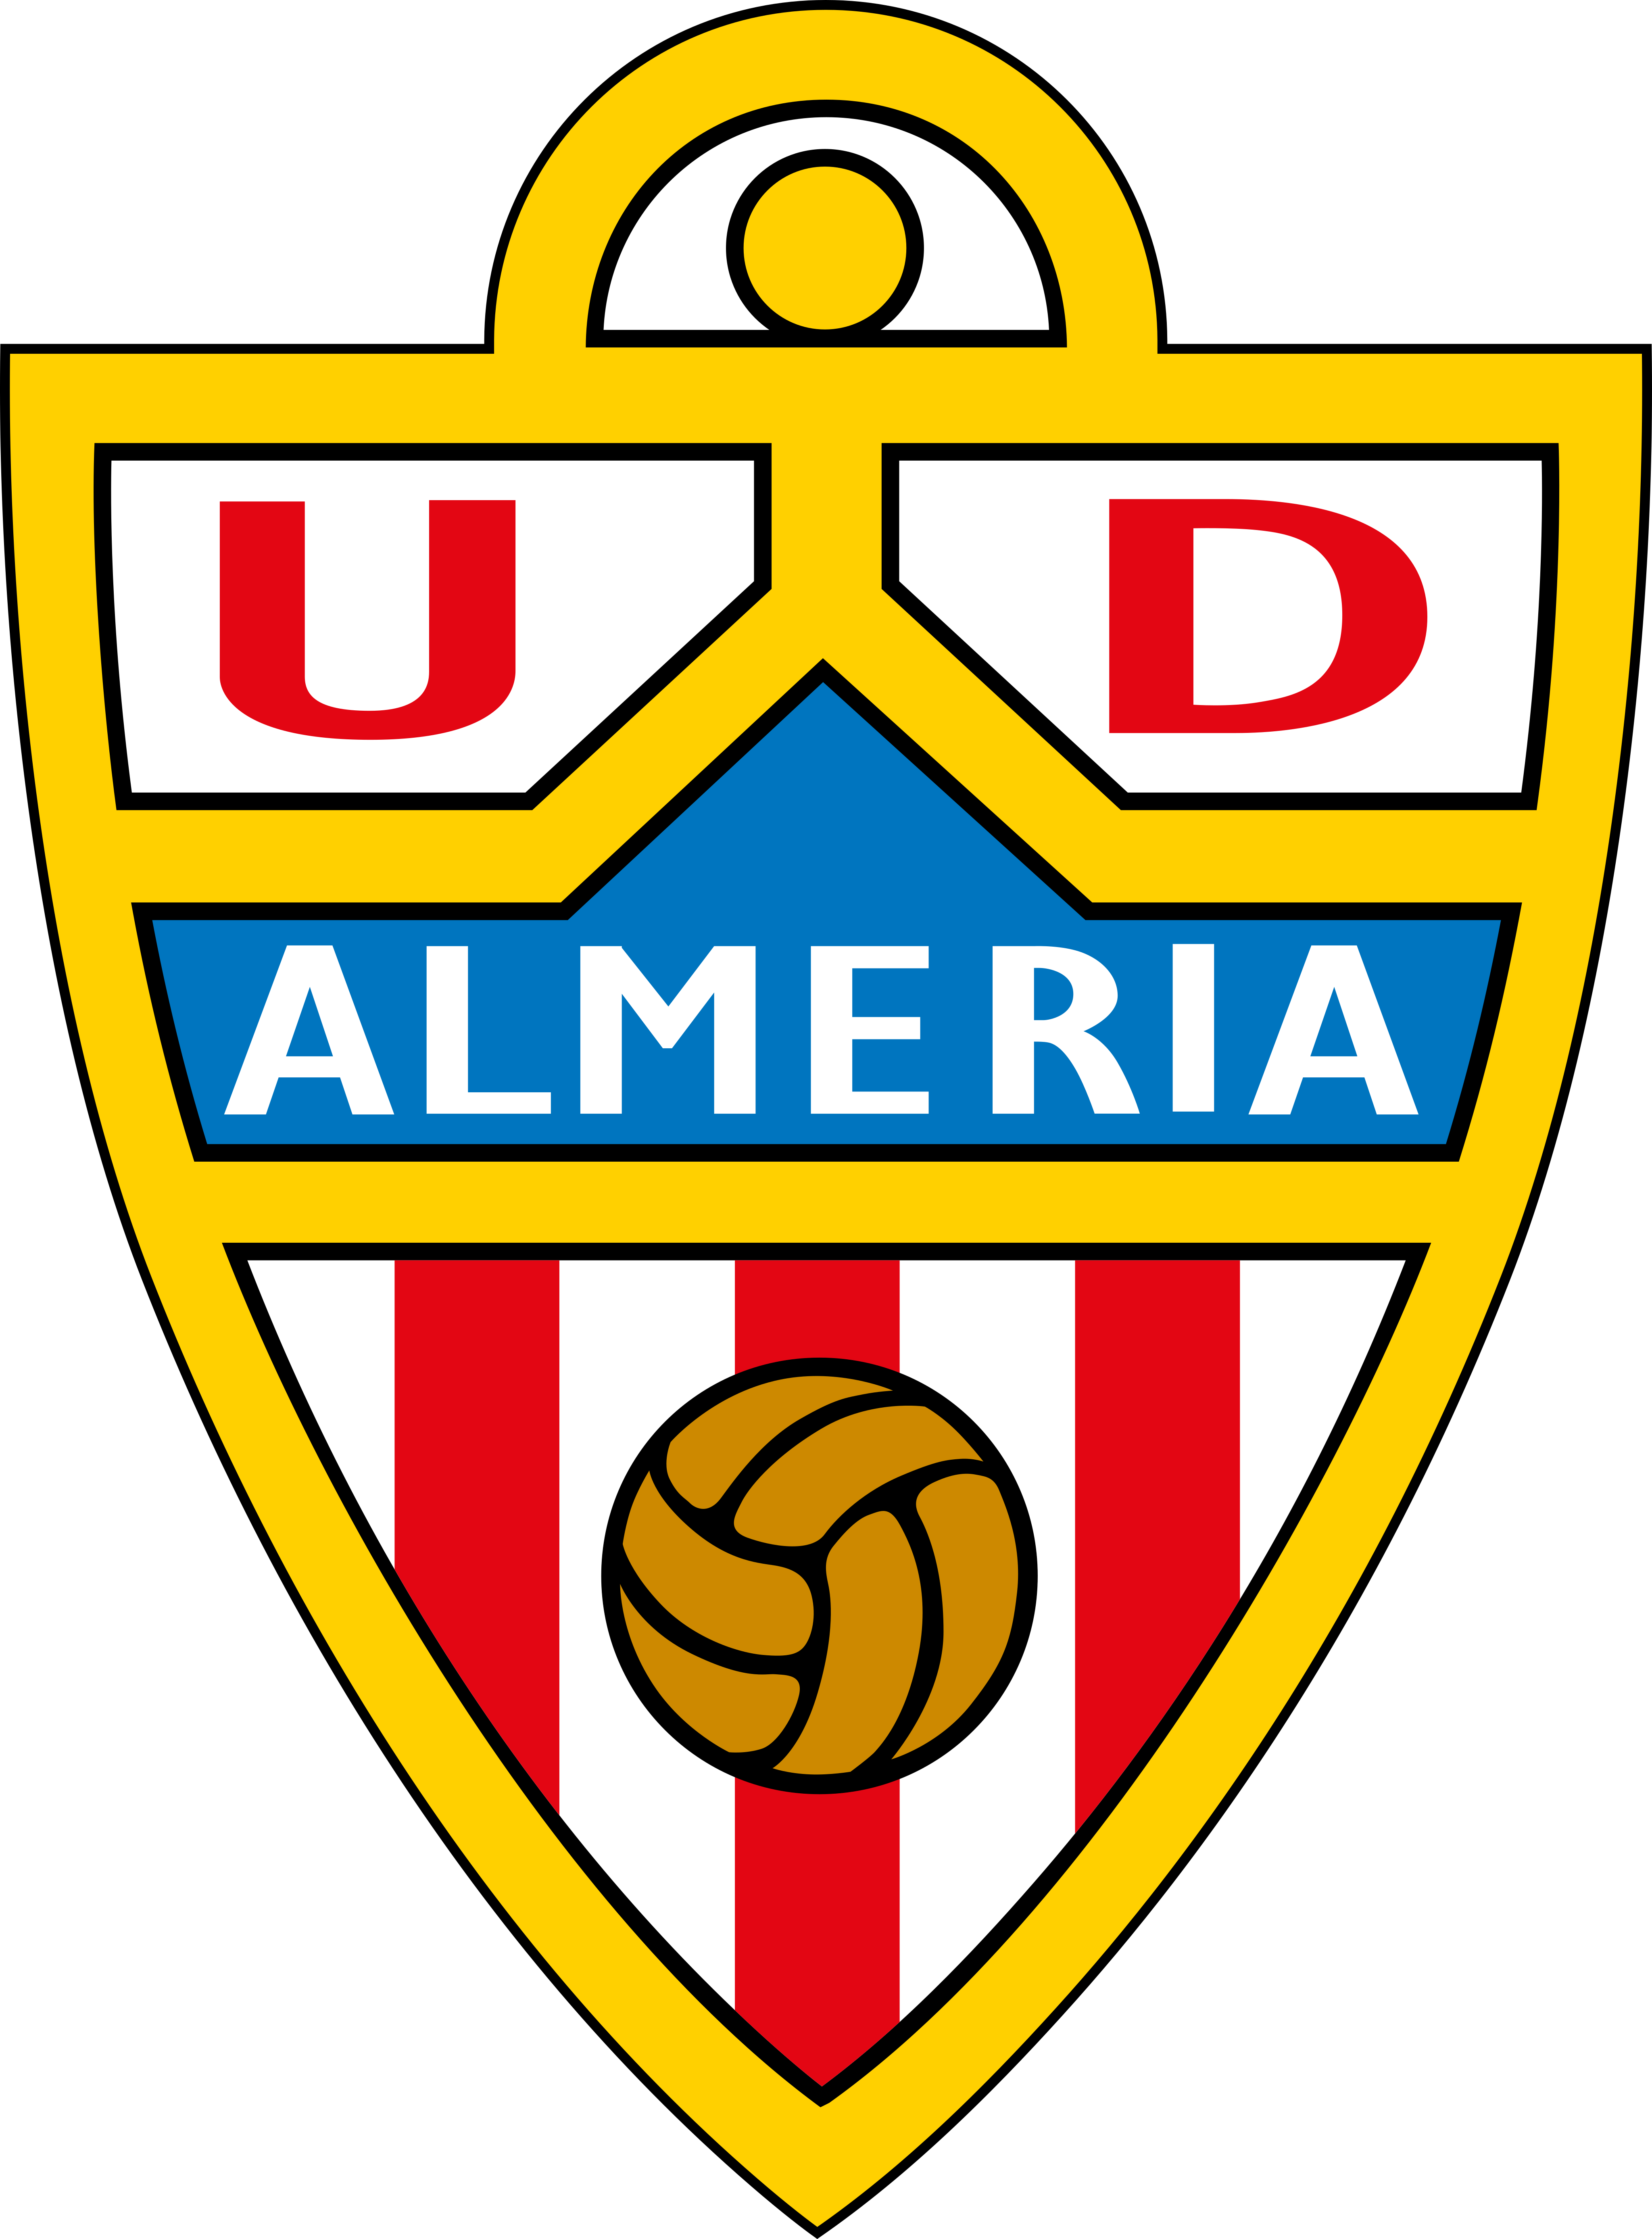 ud almeria logo - UD Almeria Logo